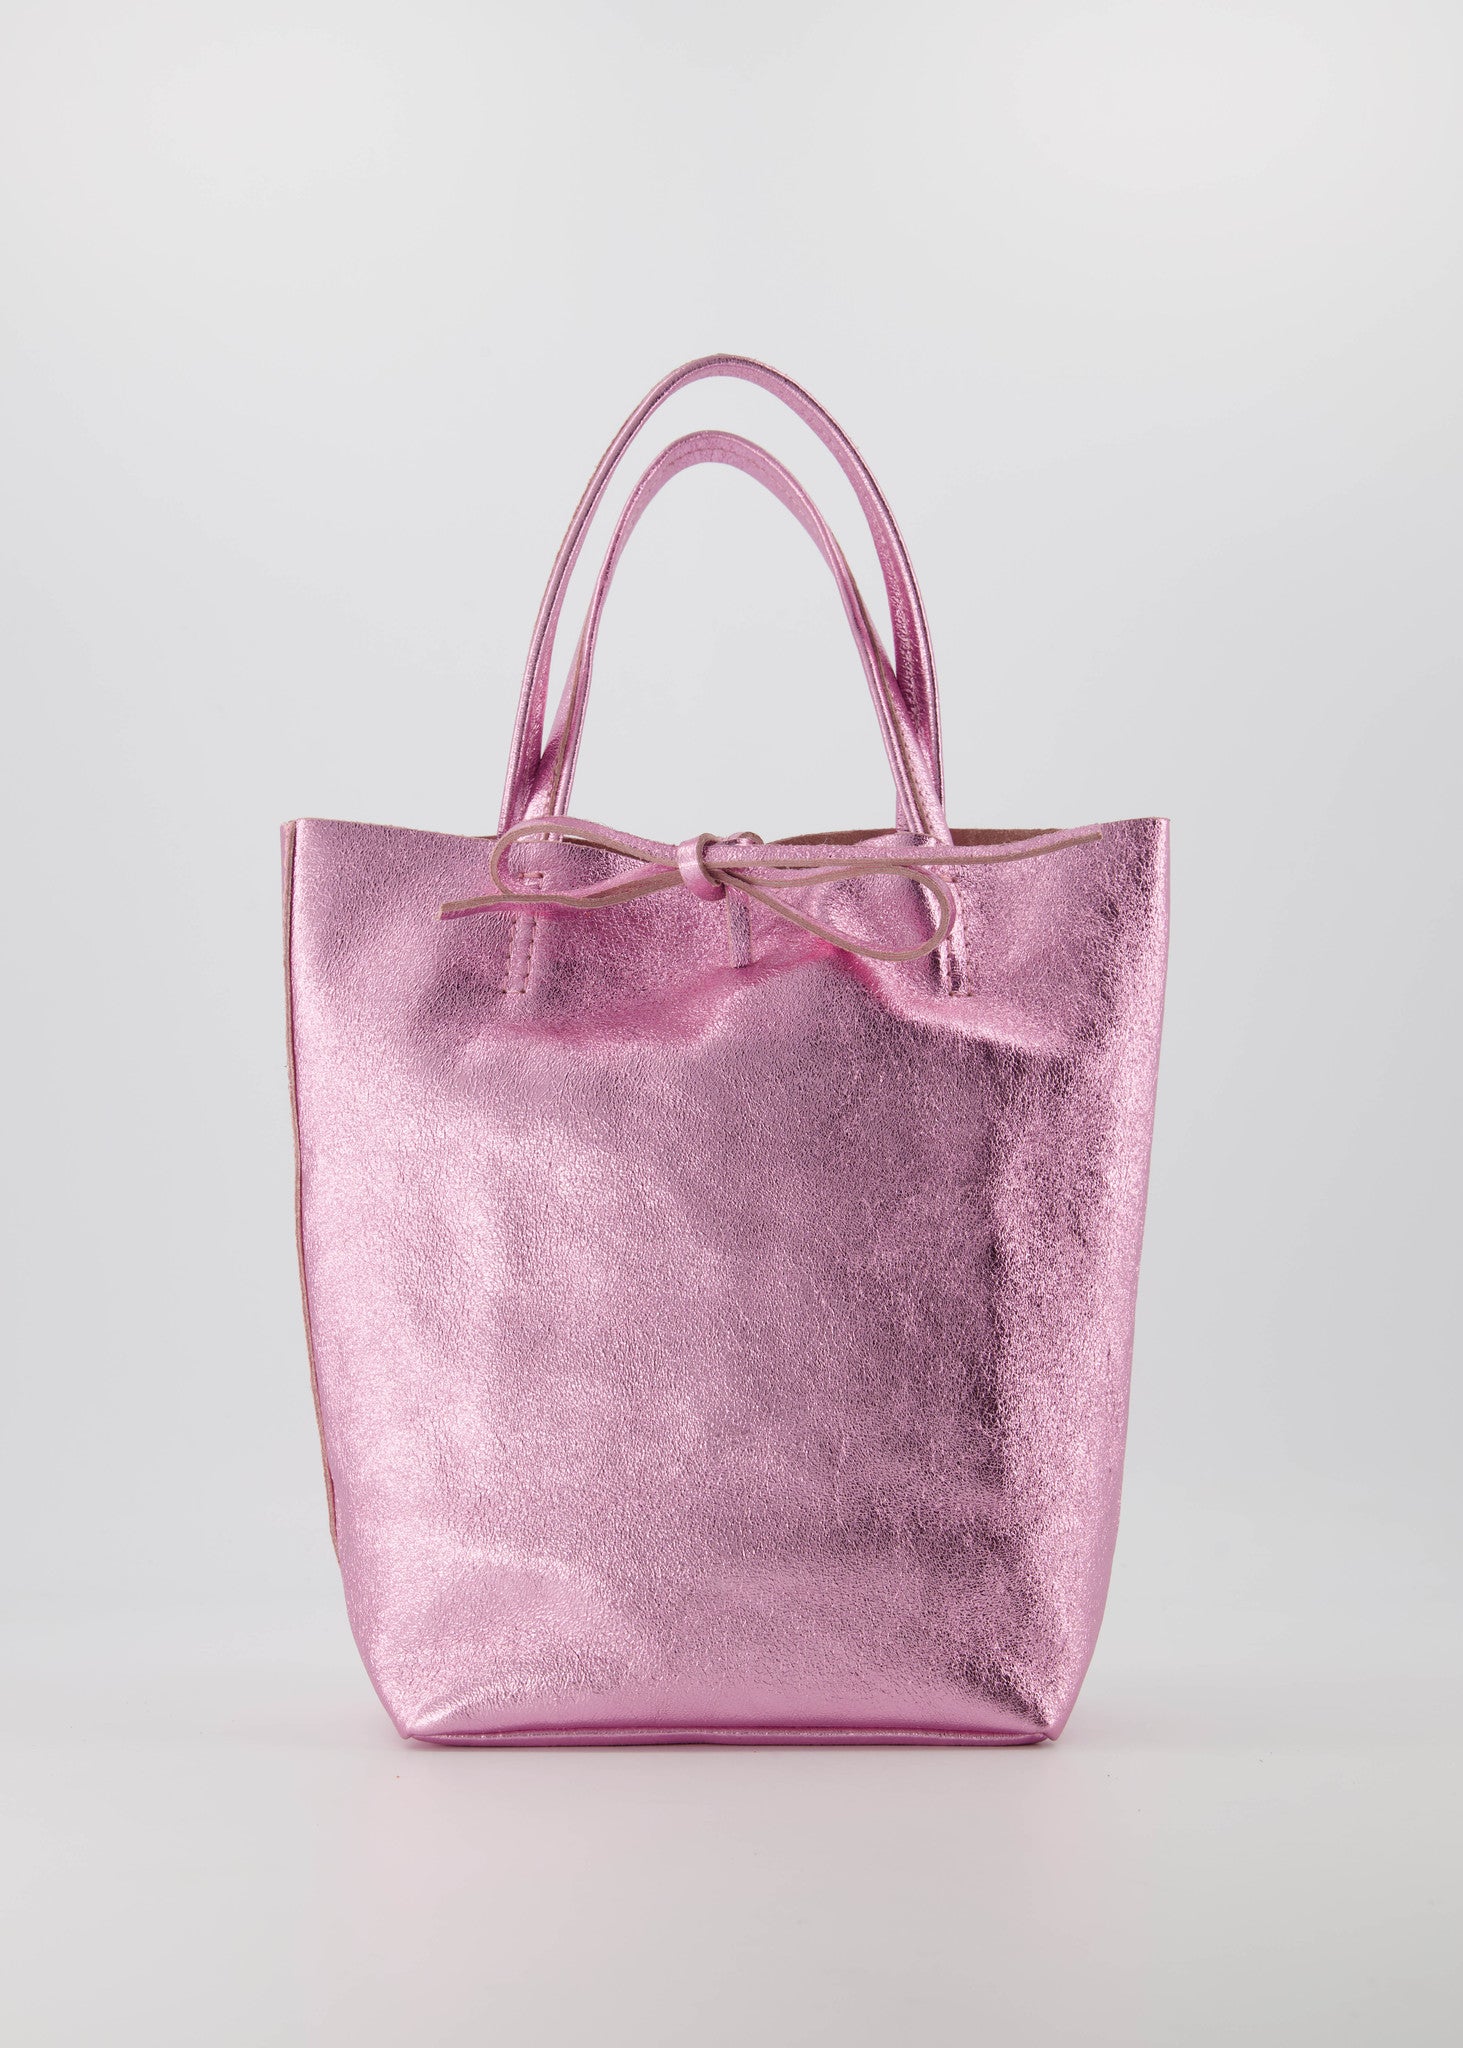 Alice bag Metallic Roze - LEEF mode en accessoires